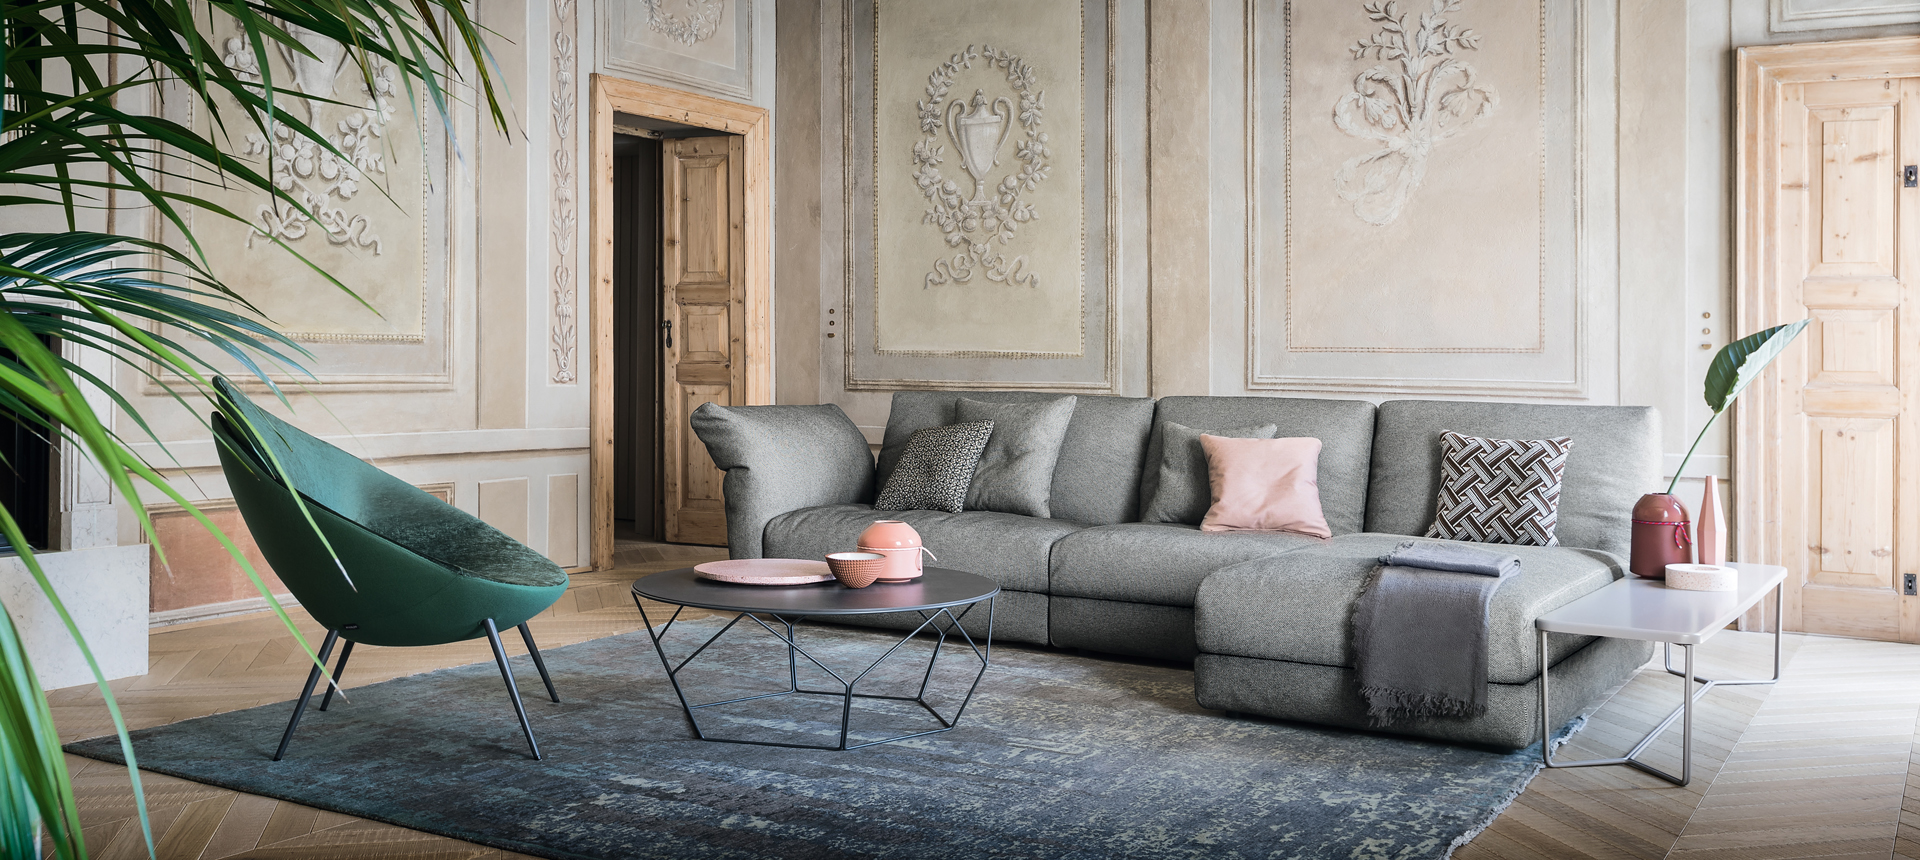 Contemporary Living Room Furniture | Designer Furniture | Luxury Furniture